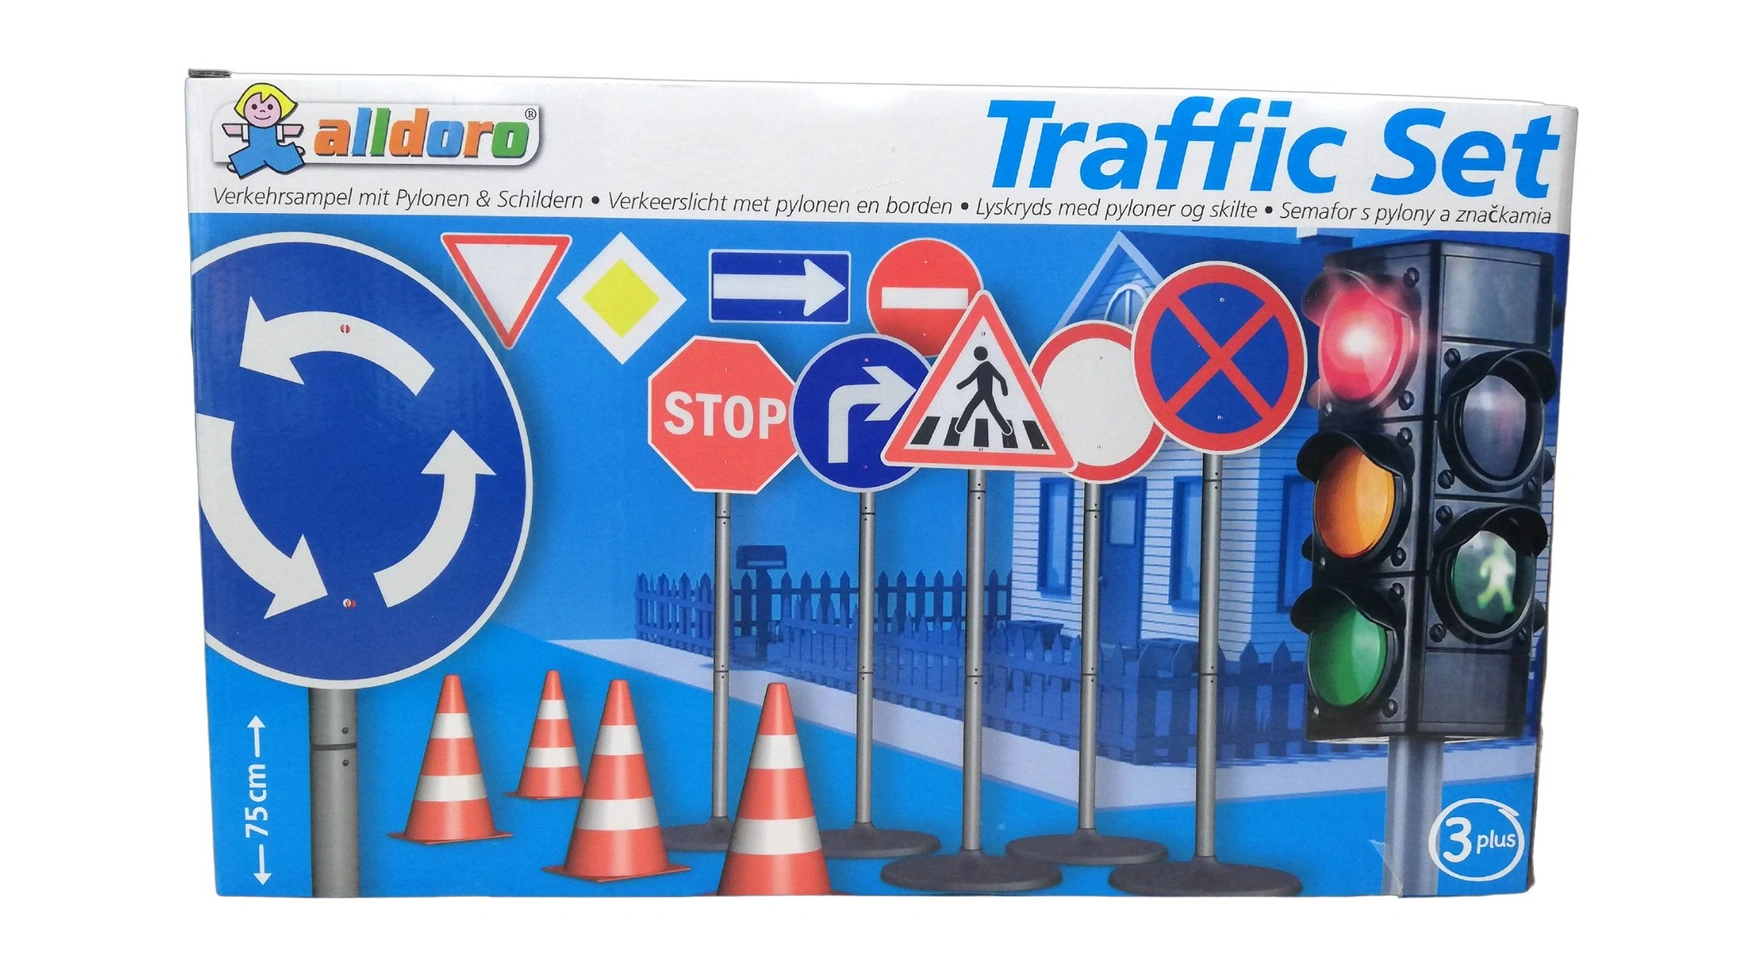 Alldoro Дорожный комплект XXL со светофором, дорожными знаками и пилонами